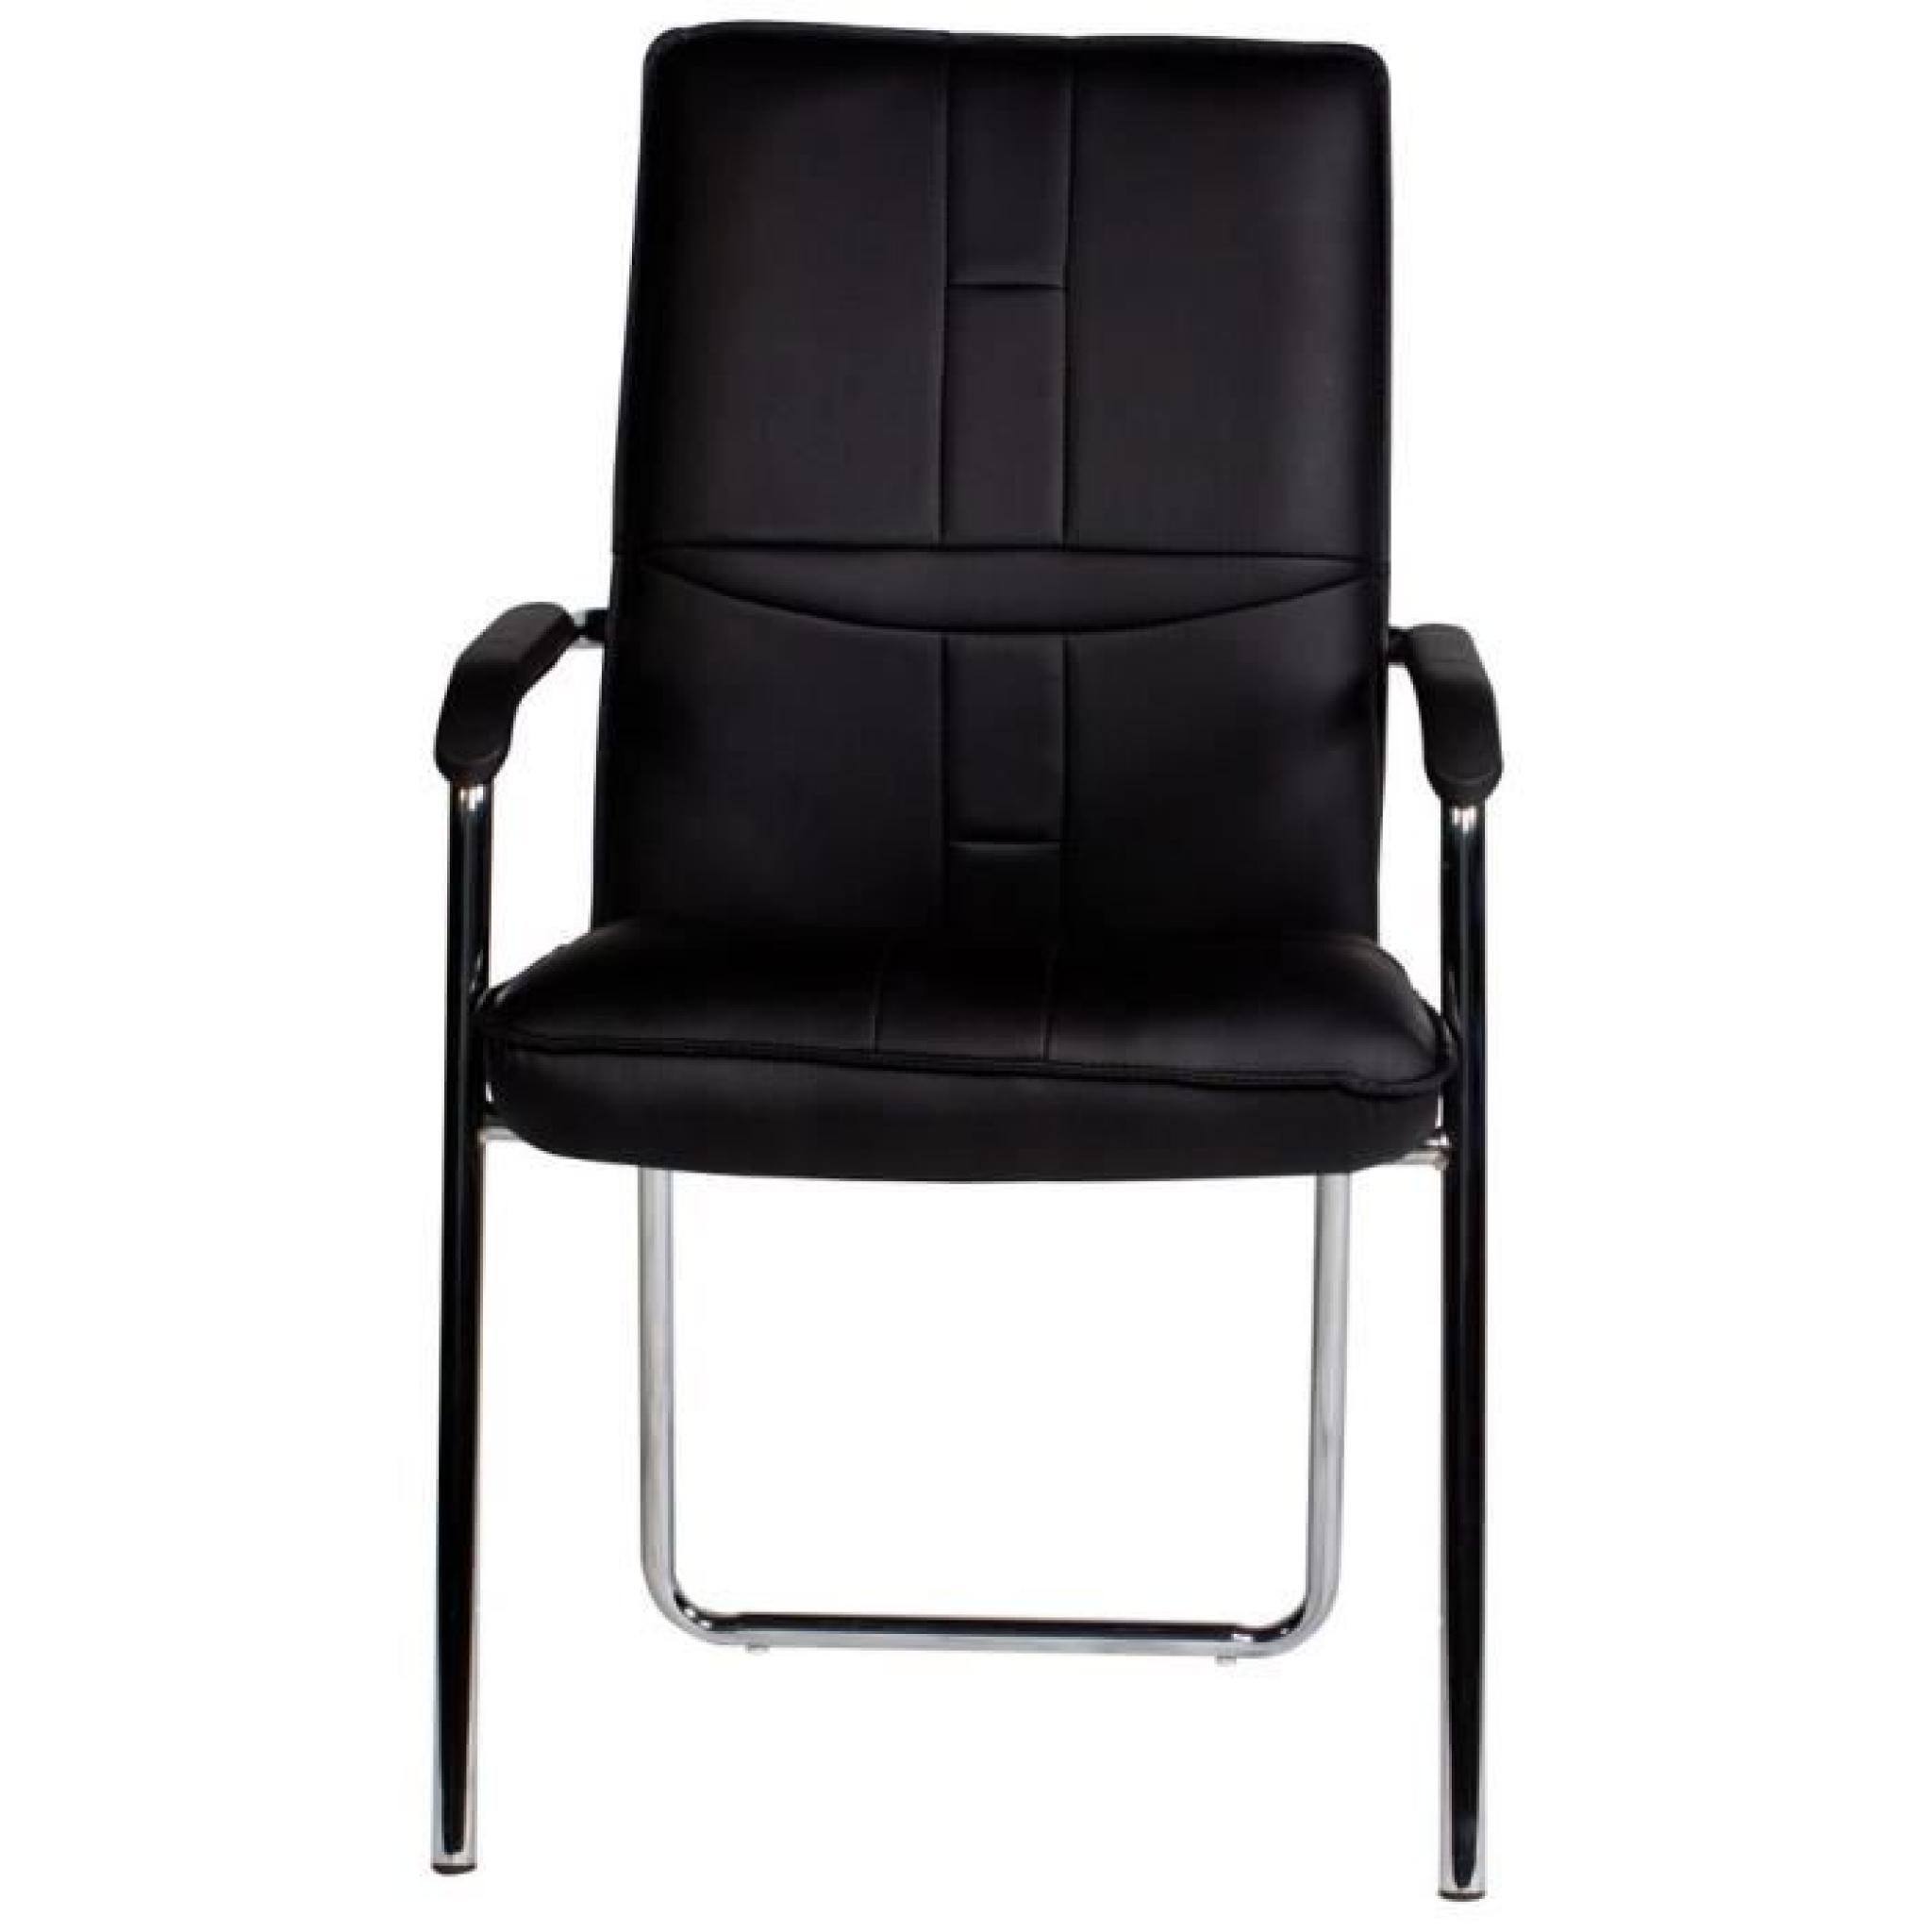 Chaise noir et acier chromé avec accoudoirs pas cher